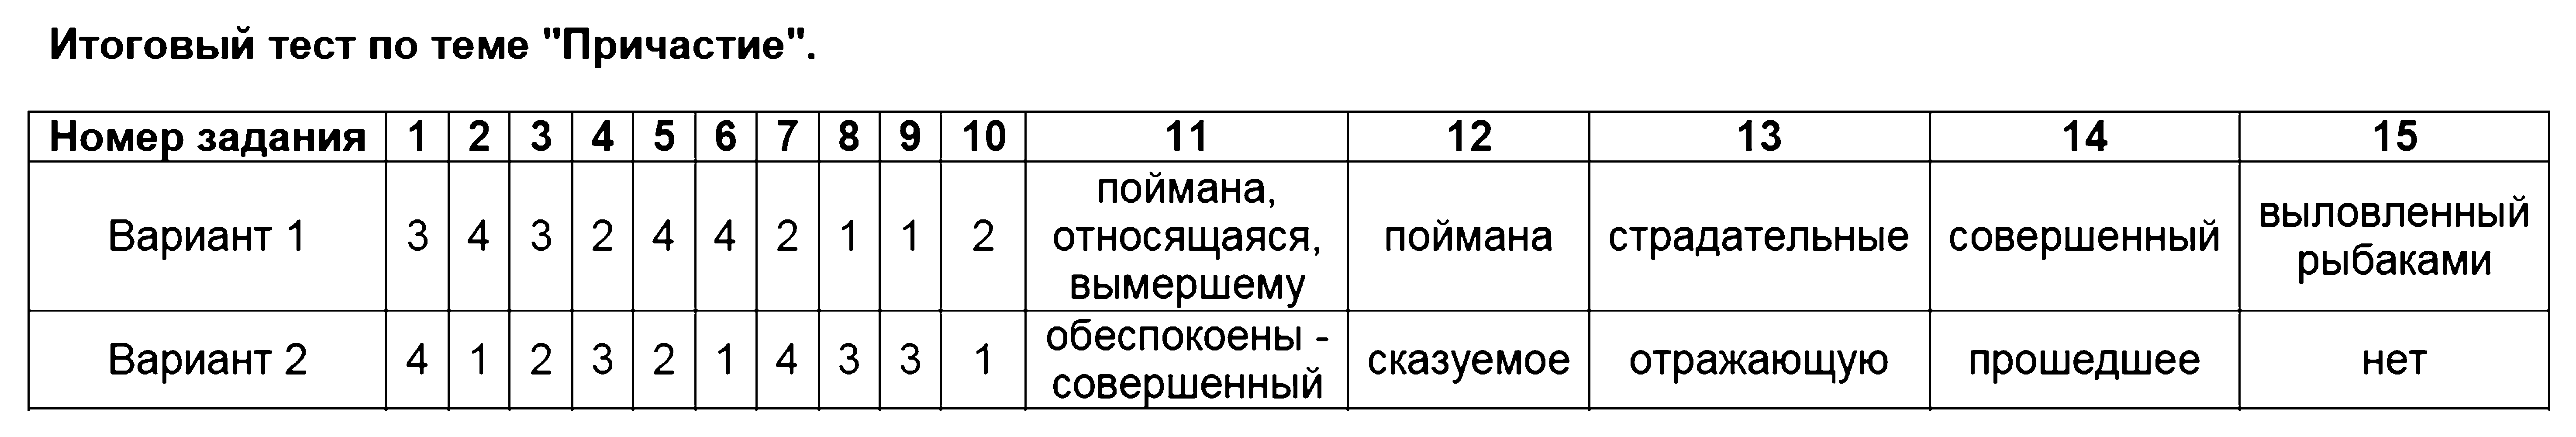 ГДЗ Русский язык 7 класс - 12. Итоговый тест по теме Причастие